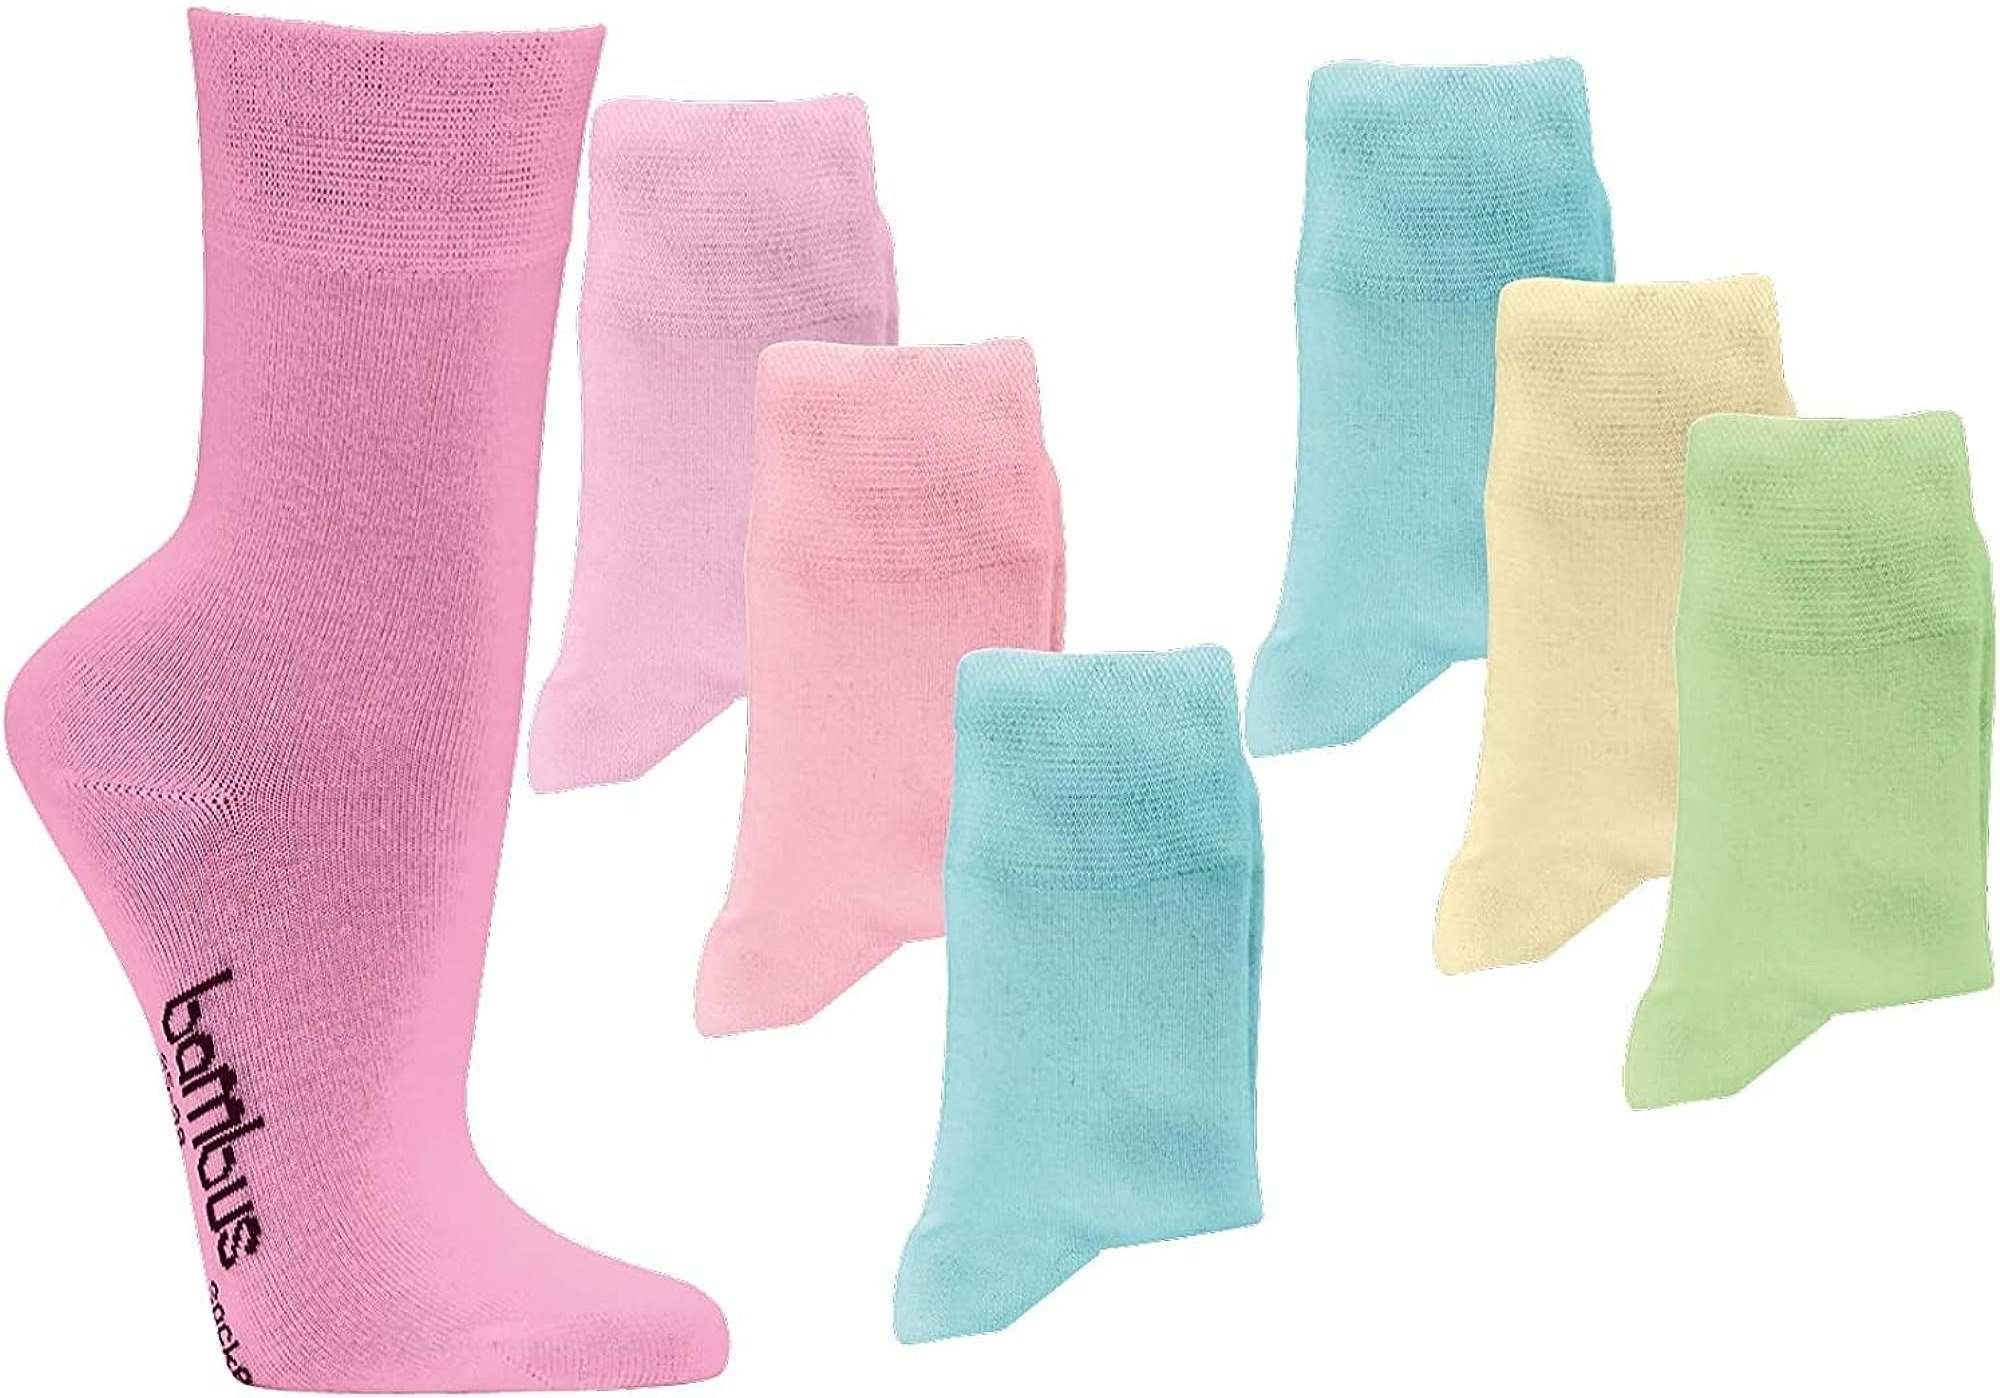 FussFreunde Komfortsocken 6 Paar Bambus Socken Pastell Farben für Damen mit ANTILOCH-GARANTIE